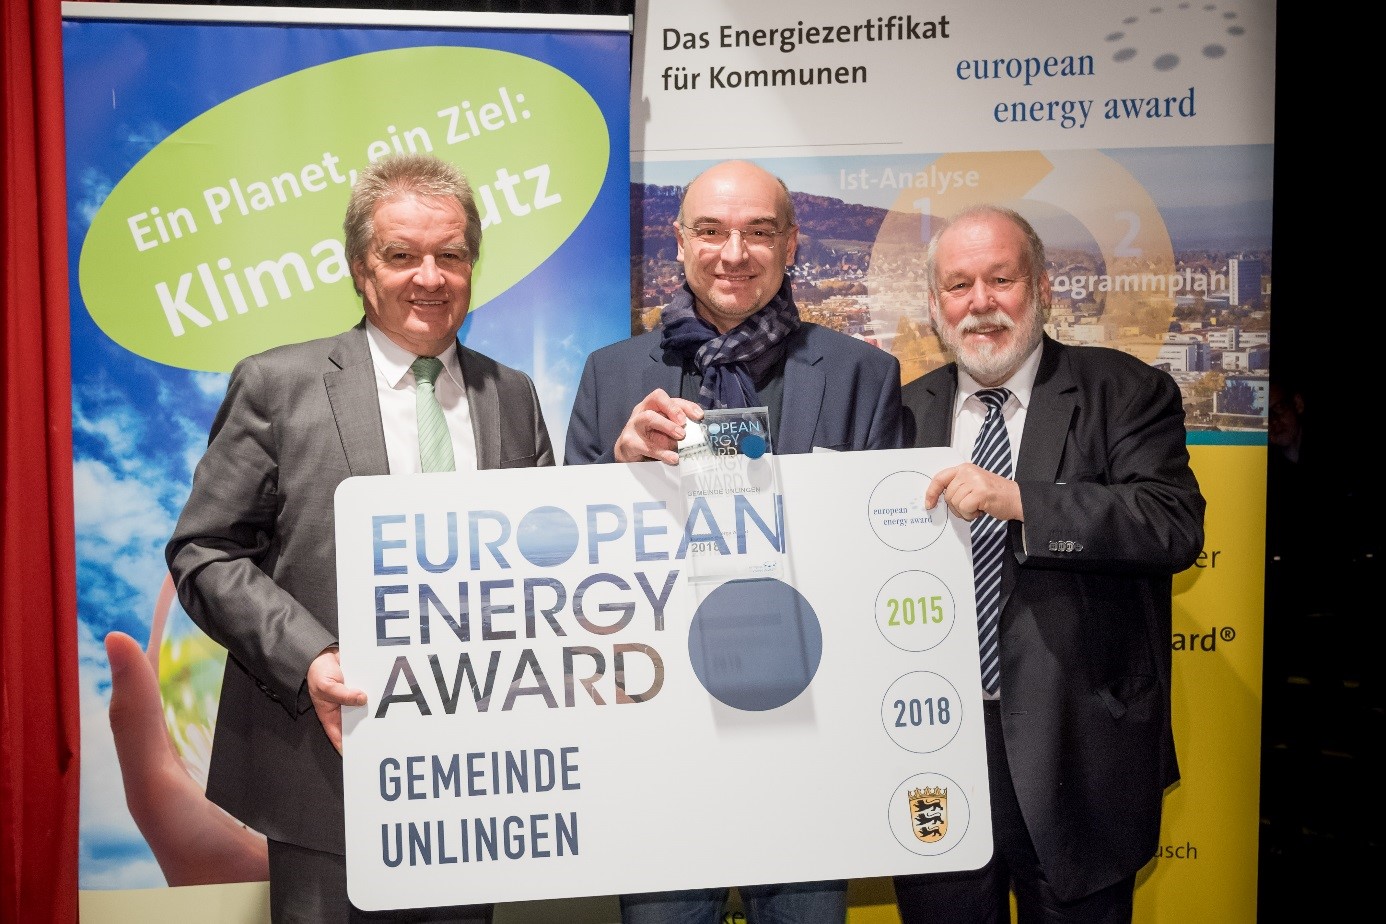  BM Hölz erhält den Preis für die Gemeinde Unlingen aus den Händen von Umweltminister Franz Untersteller und Dr. Armand Dütz, Bundesgeschäftsstelle European Energy Award. 